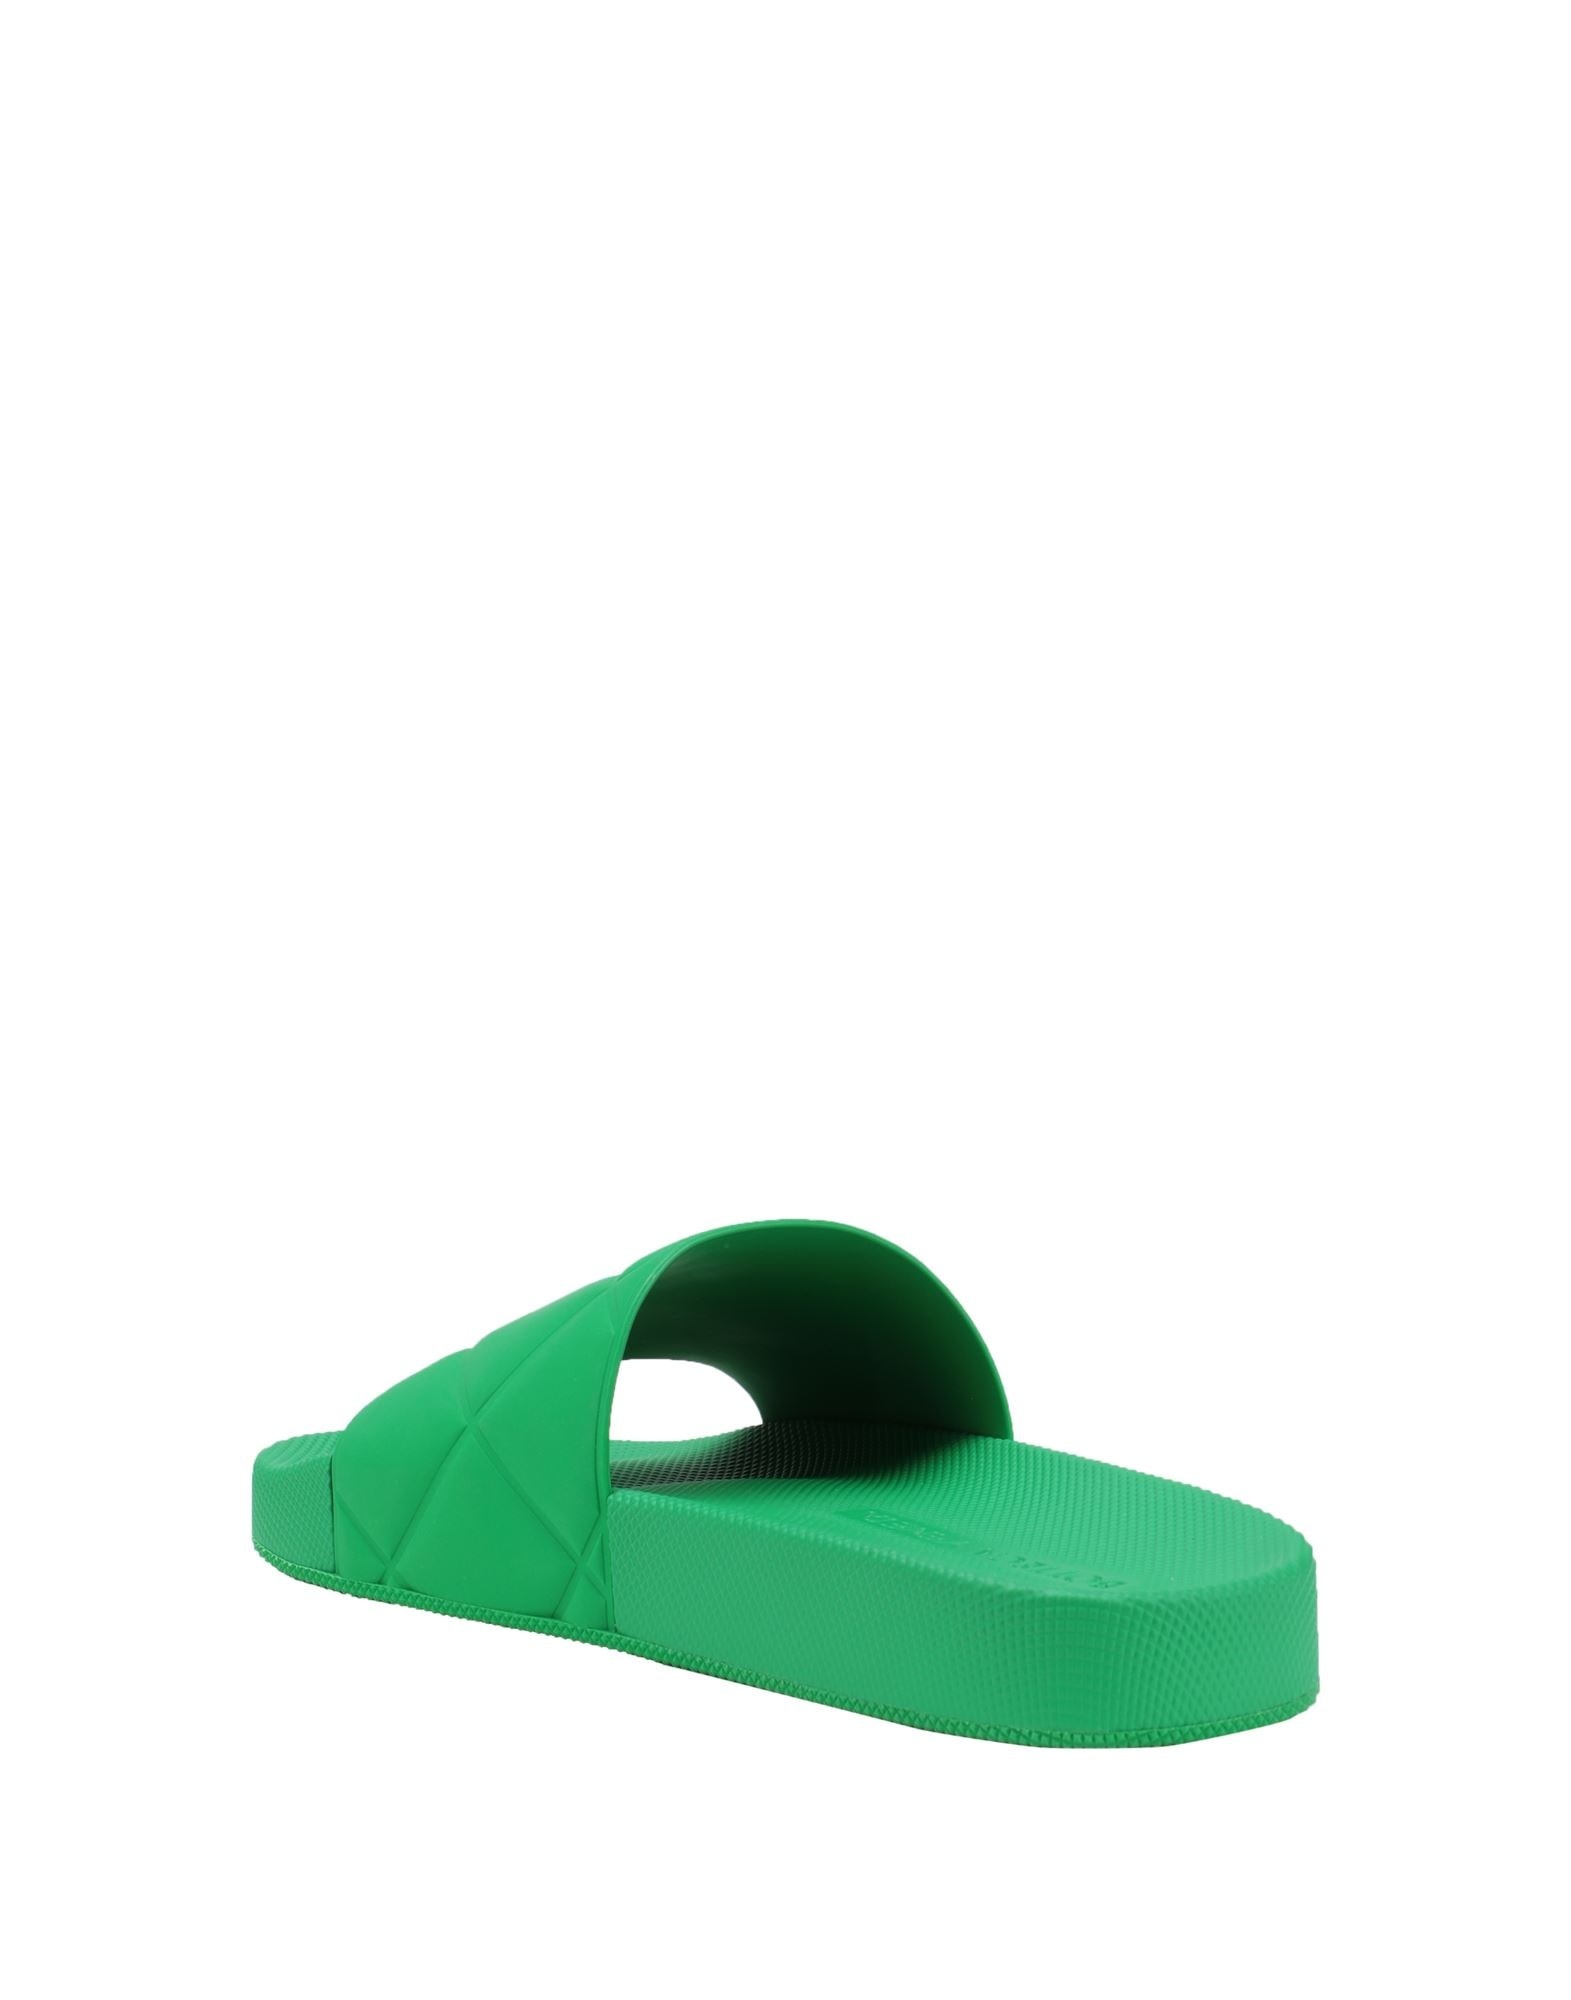 Green Women's Sandals - 3